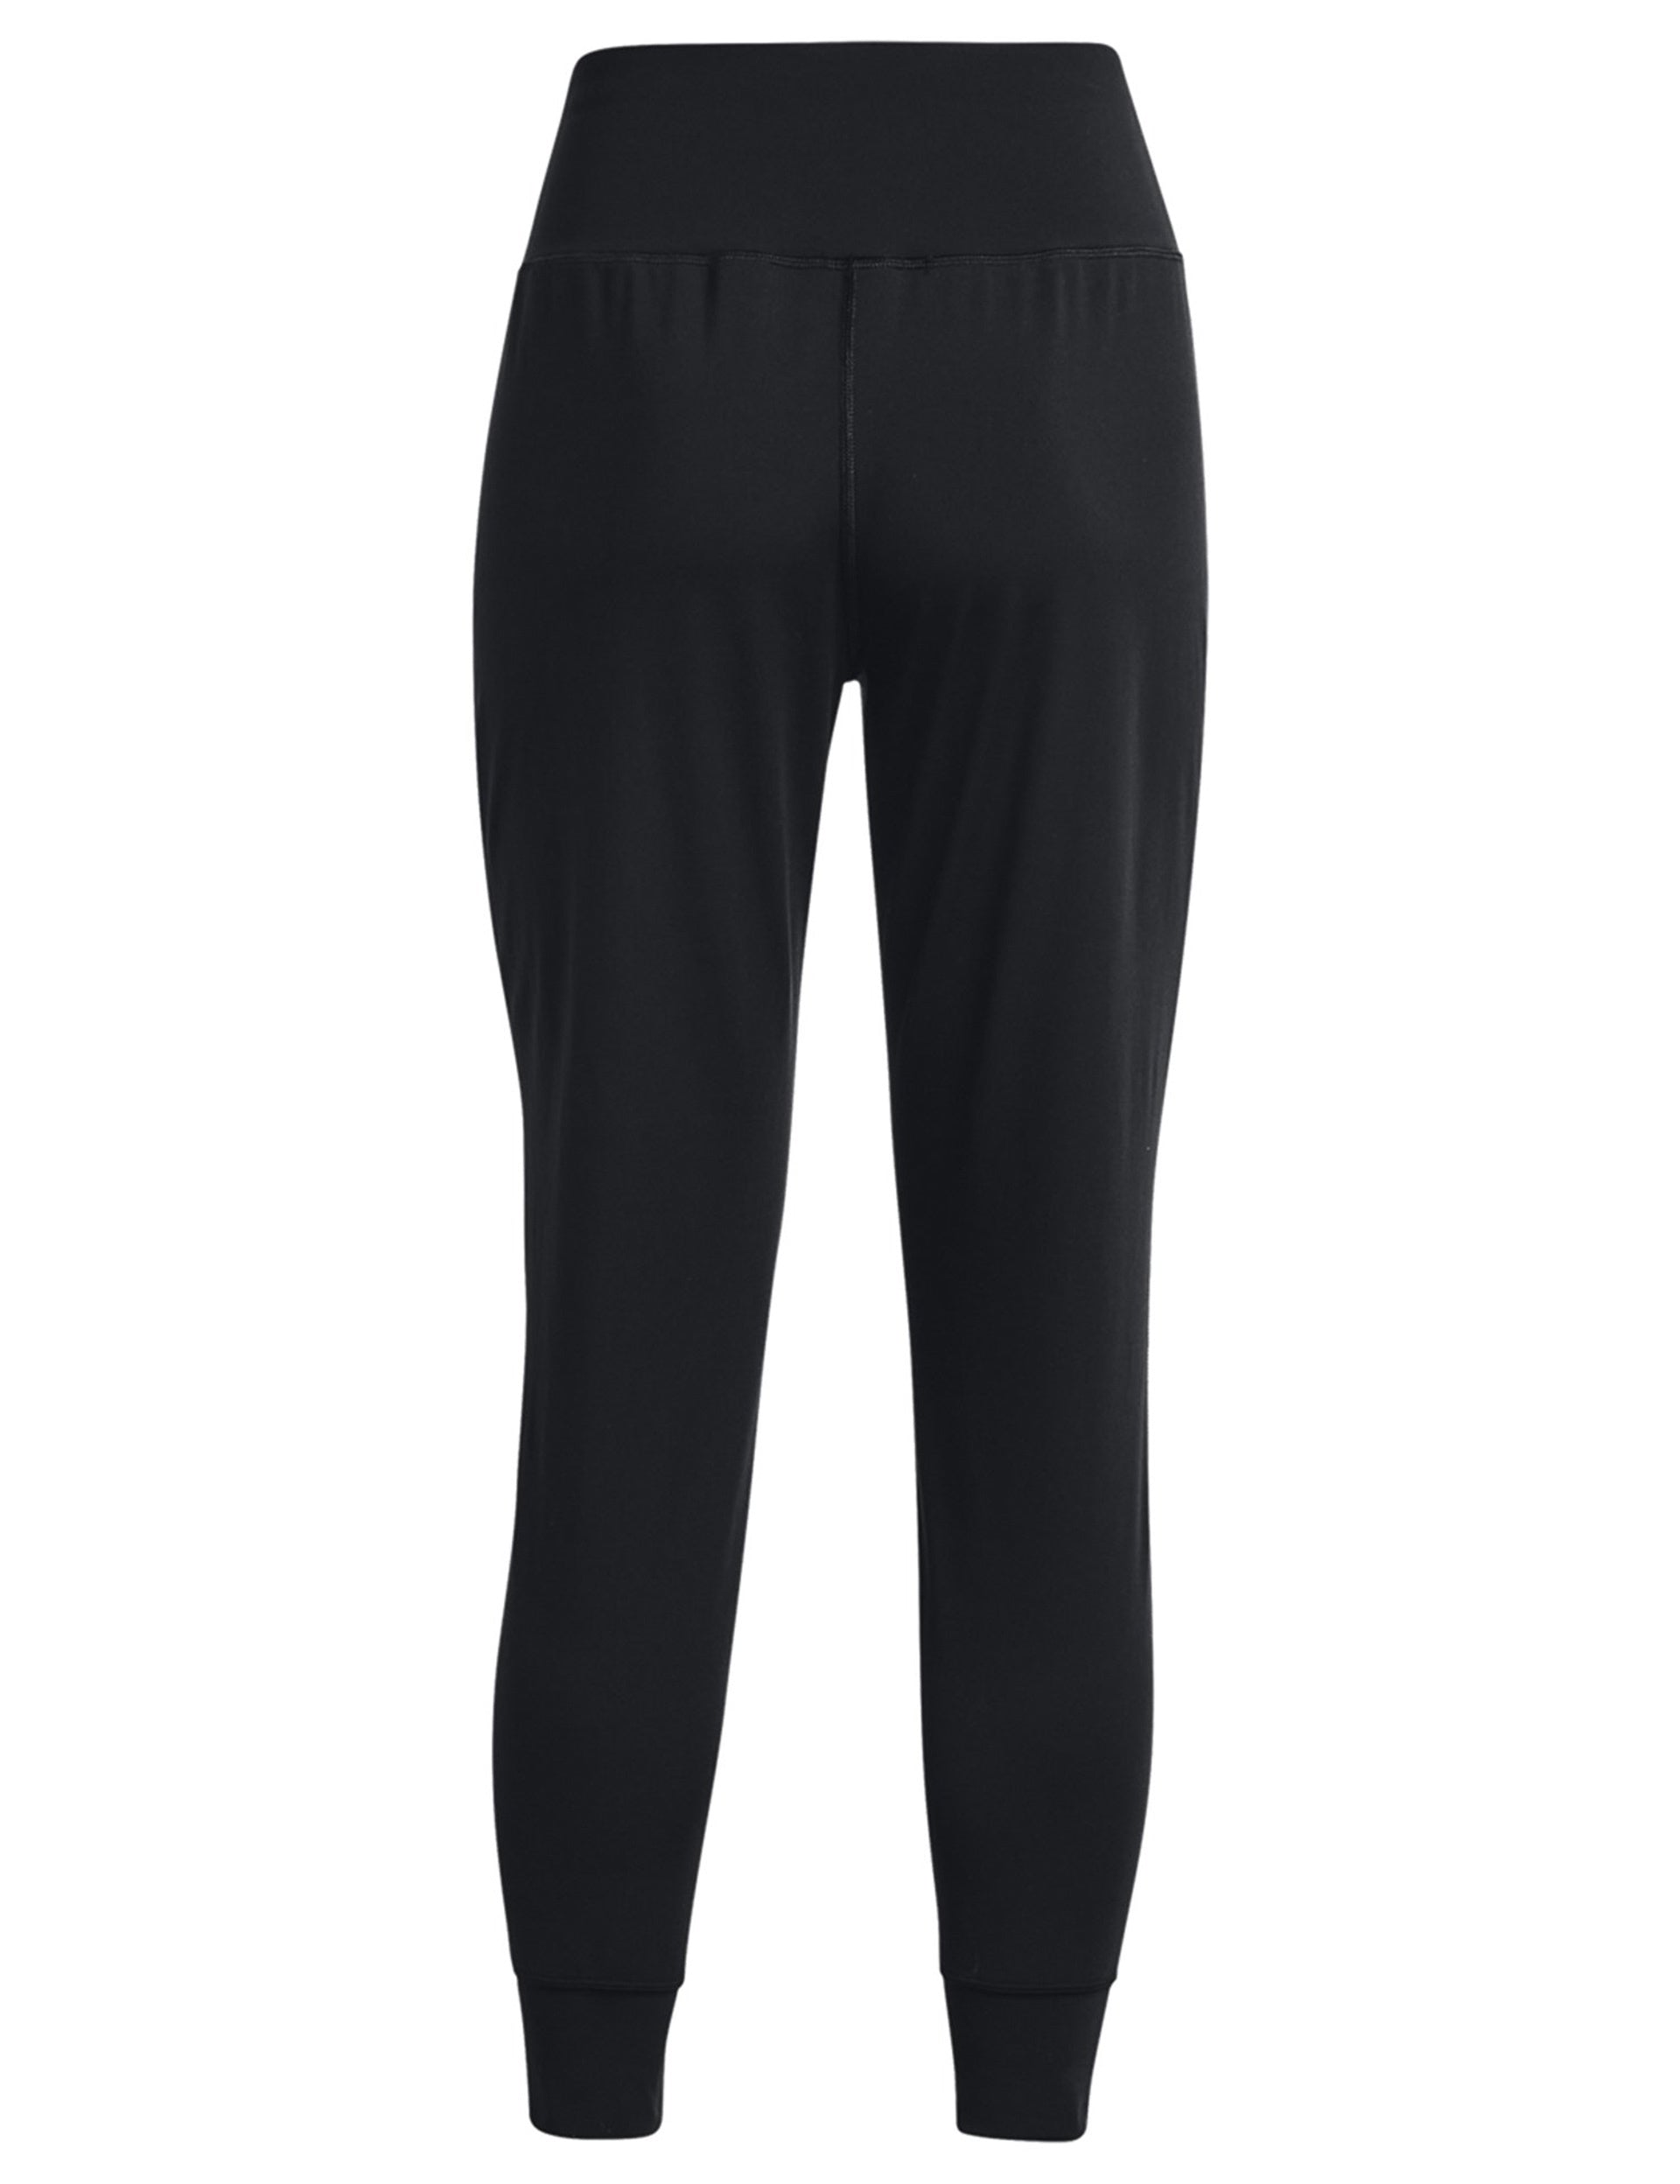 Women's jogging suit Under Armour Qualifier Elite - Pants / Jogging suits -  The Stockings - Womens Clothing